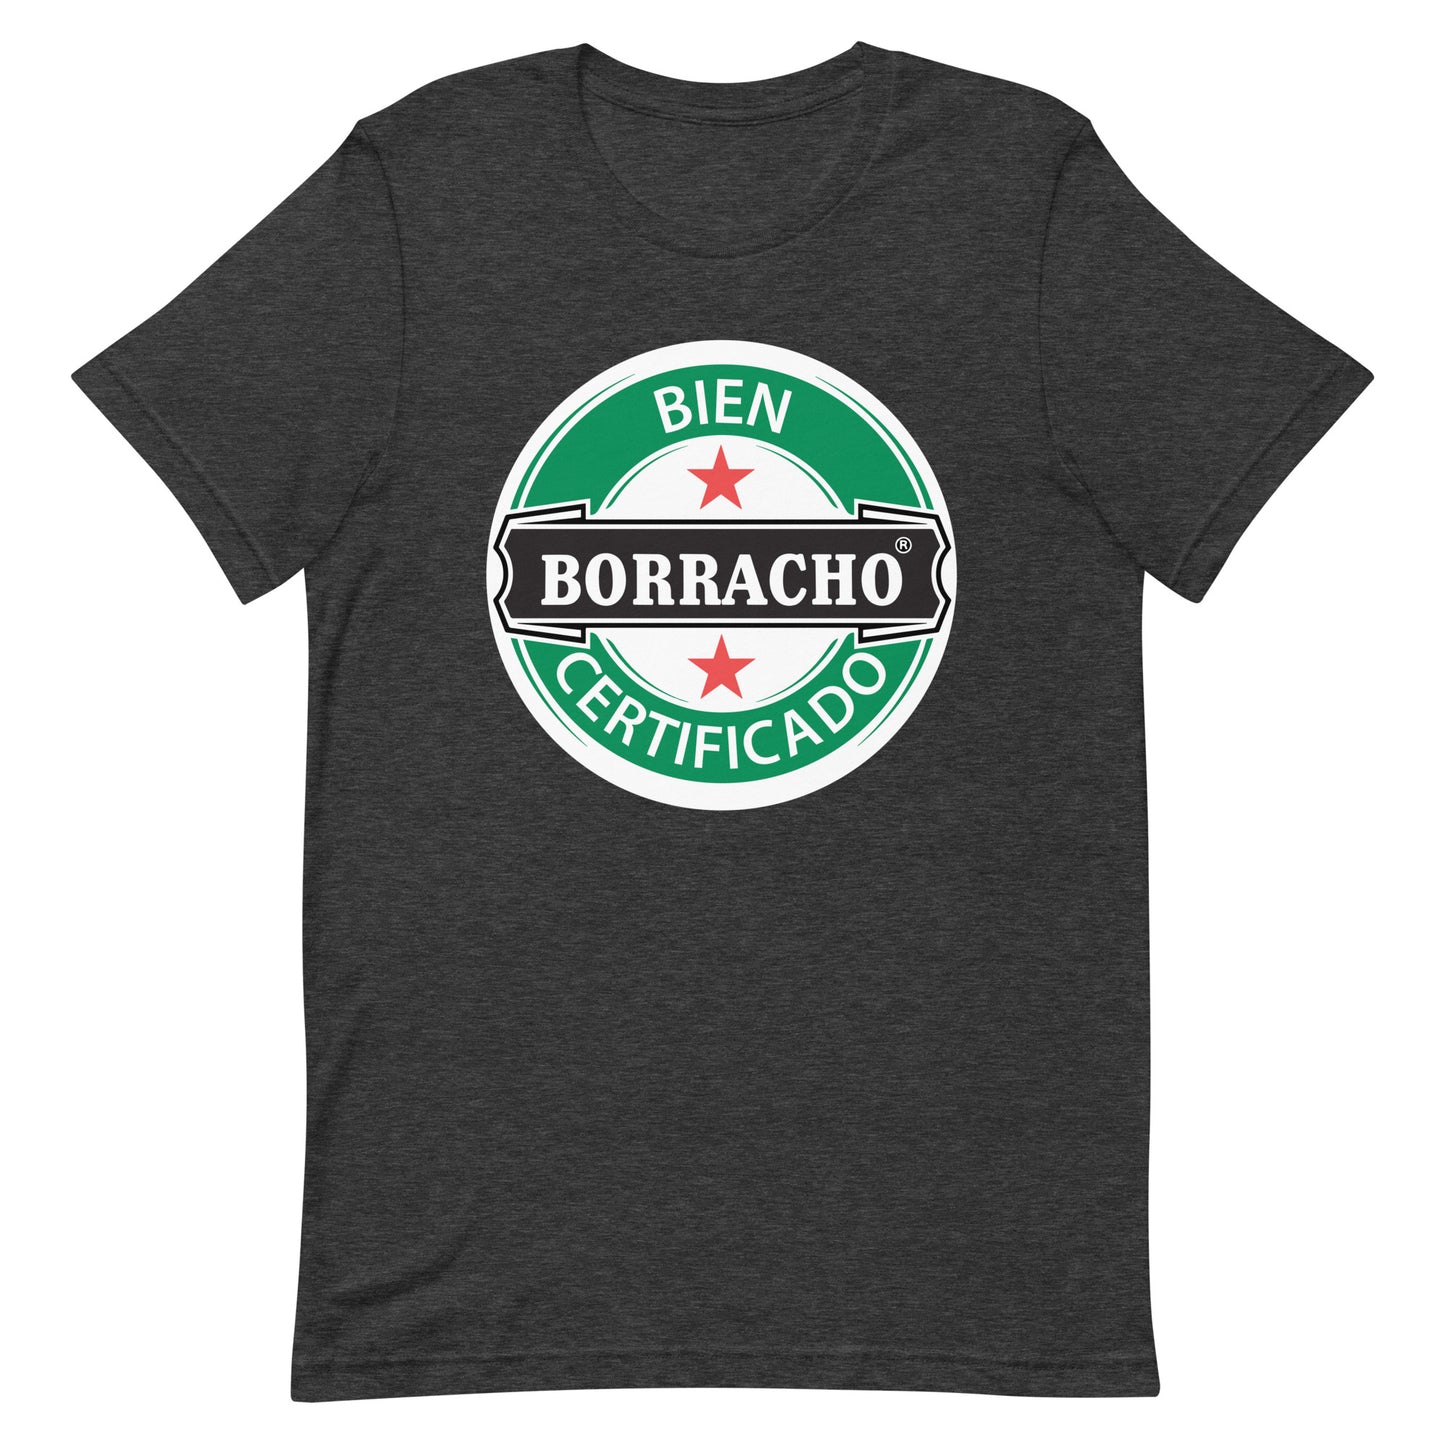 Bien Borracho Certificado T-Shirt